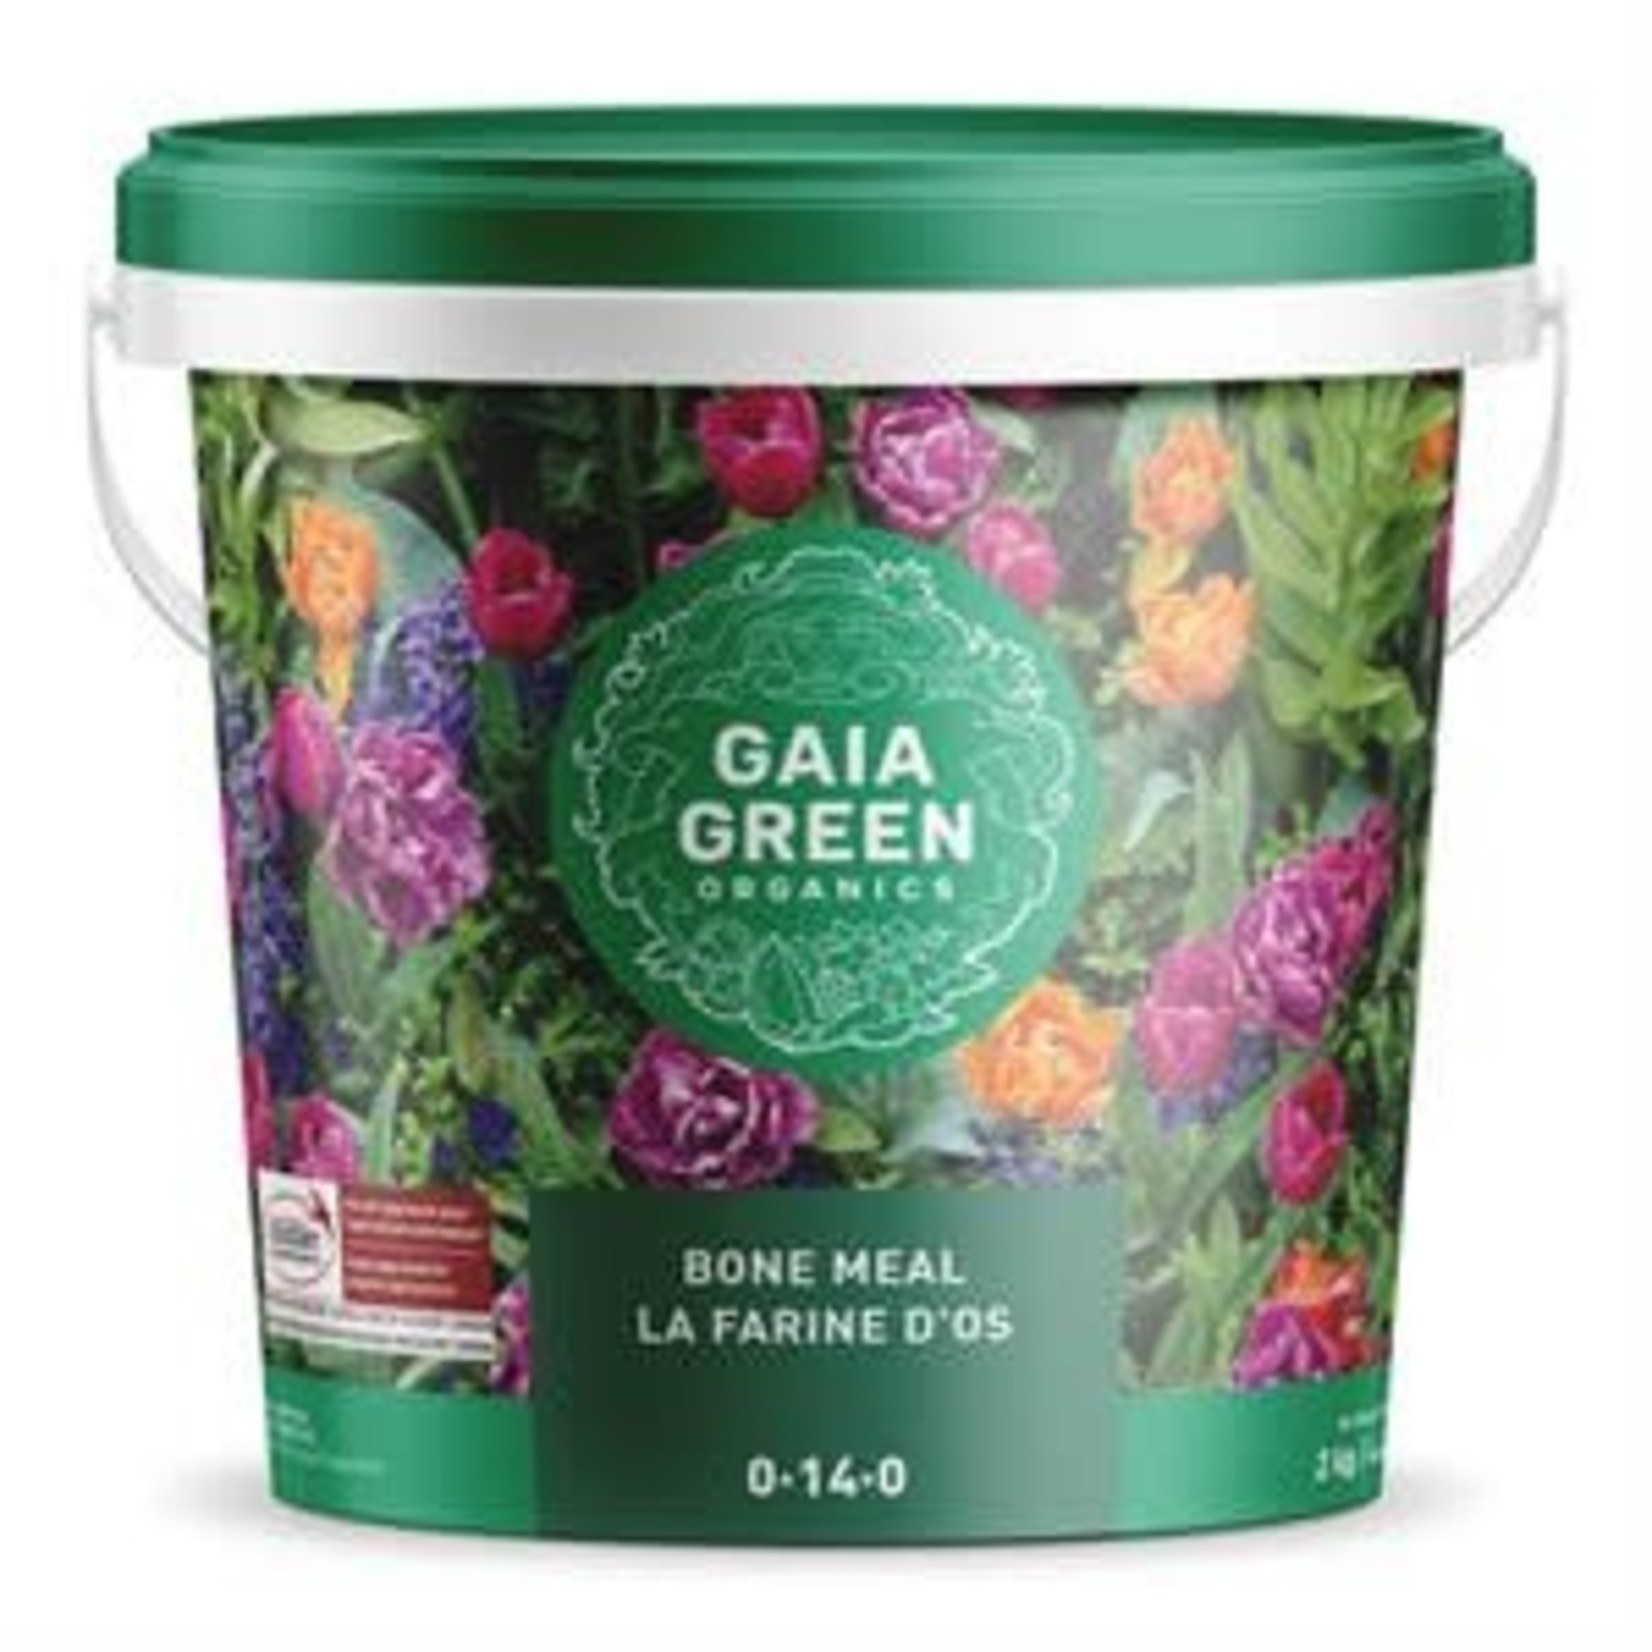 Gaia Green Bone Meal 0-14-0, 2 kg